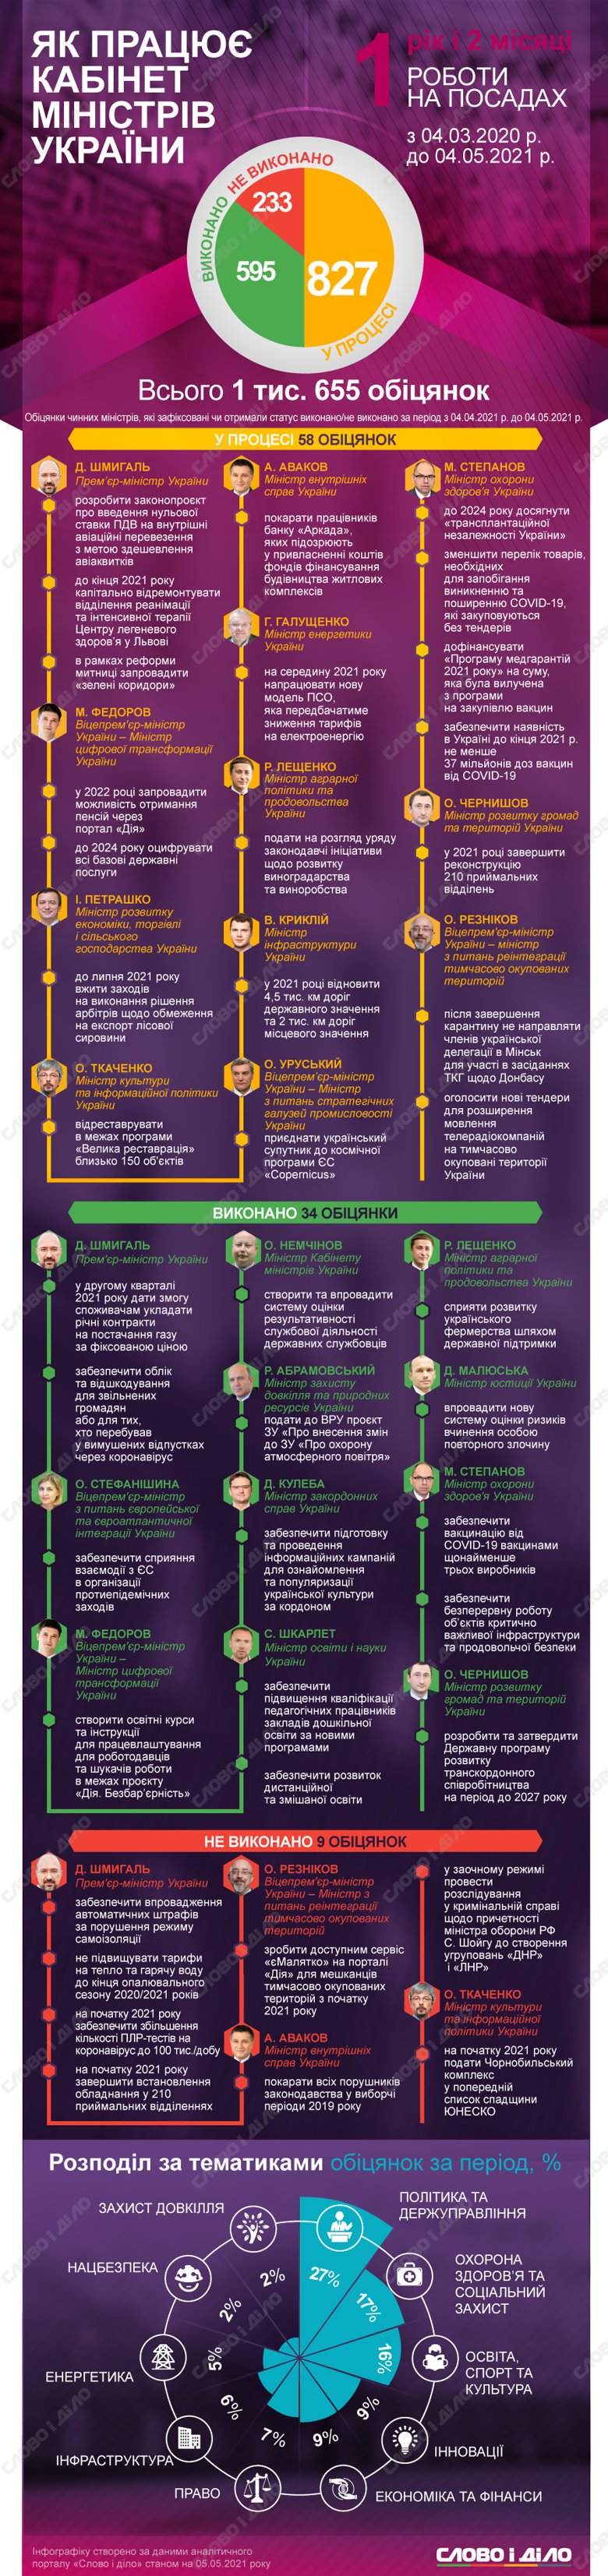 Кабмін Дениса Шмигаля за місяць виконав 34 і провалив 9 обіцянок. Крім того, міністри озвучили ще 58 нових зобов'язань.